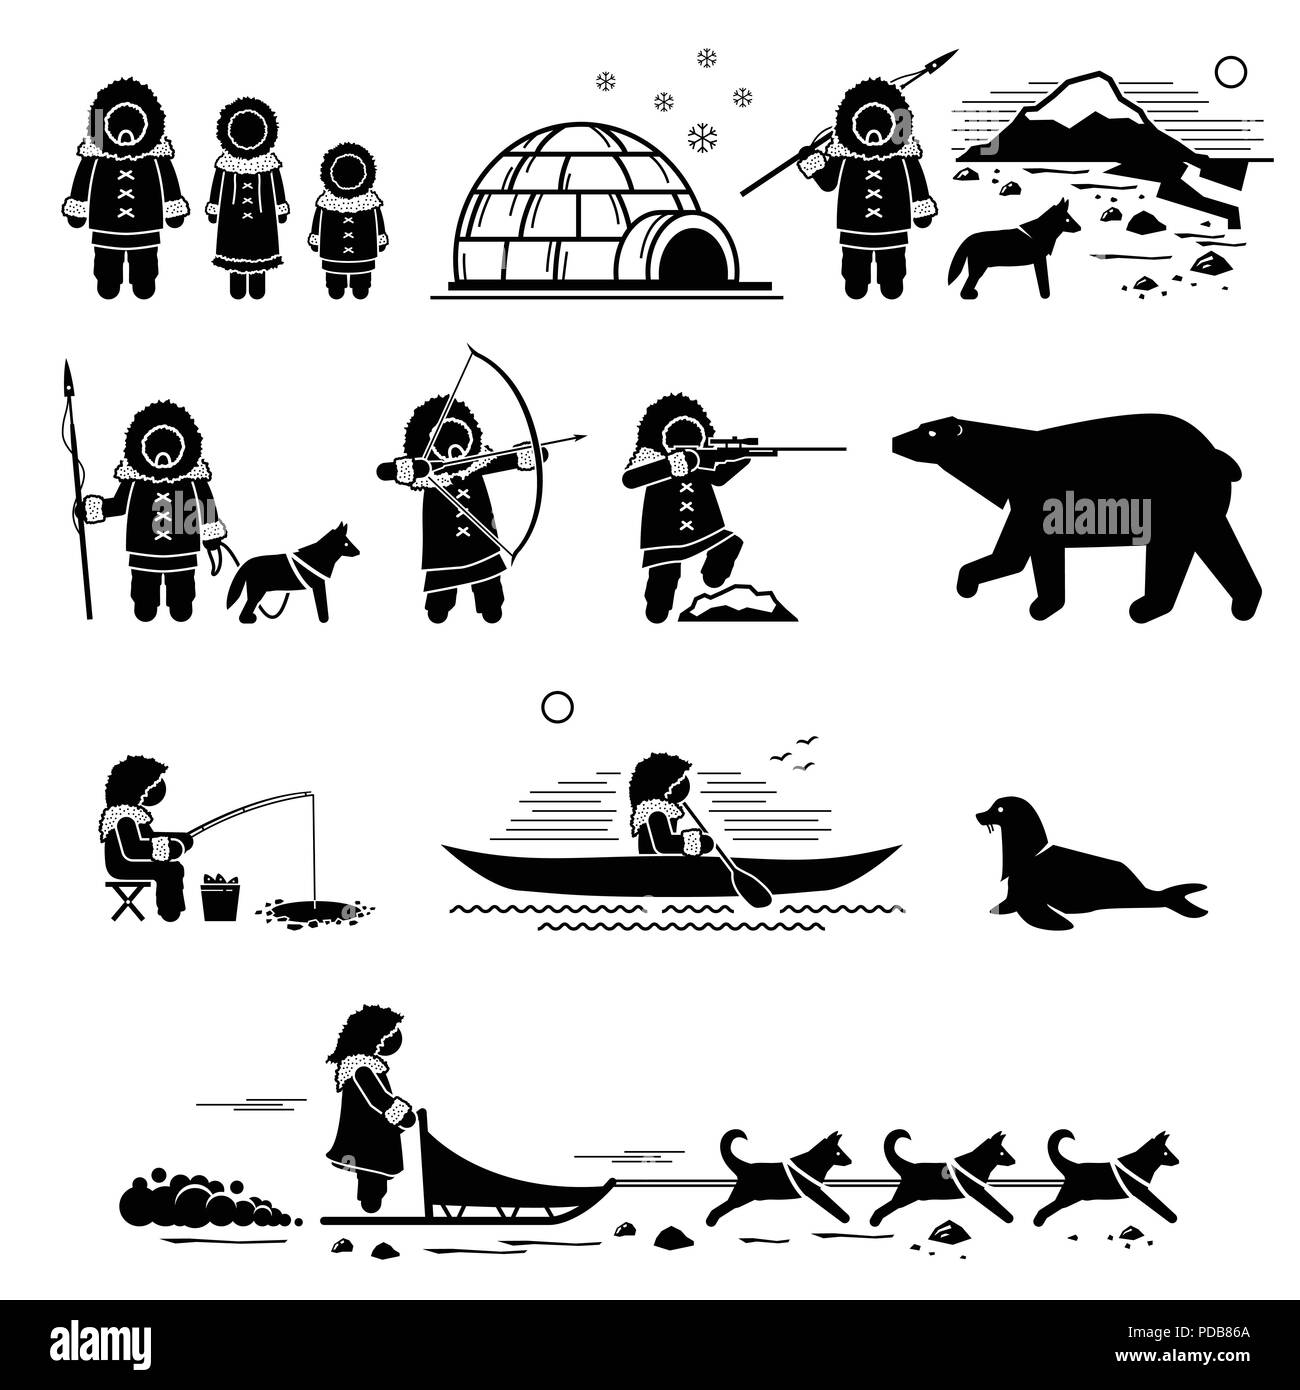 Les esquimaux, mode de vie, et les animaux. Stick figure illustre pictogramme des Esquimaux, igloo, chasse, pêche, l'ours polaire, husky chien, chiens de traîneaux, joint. Illustration de Vecteur